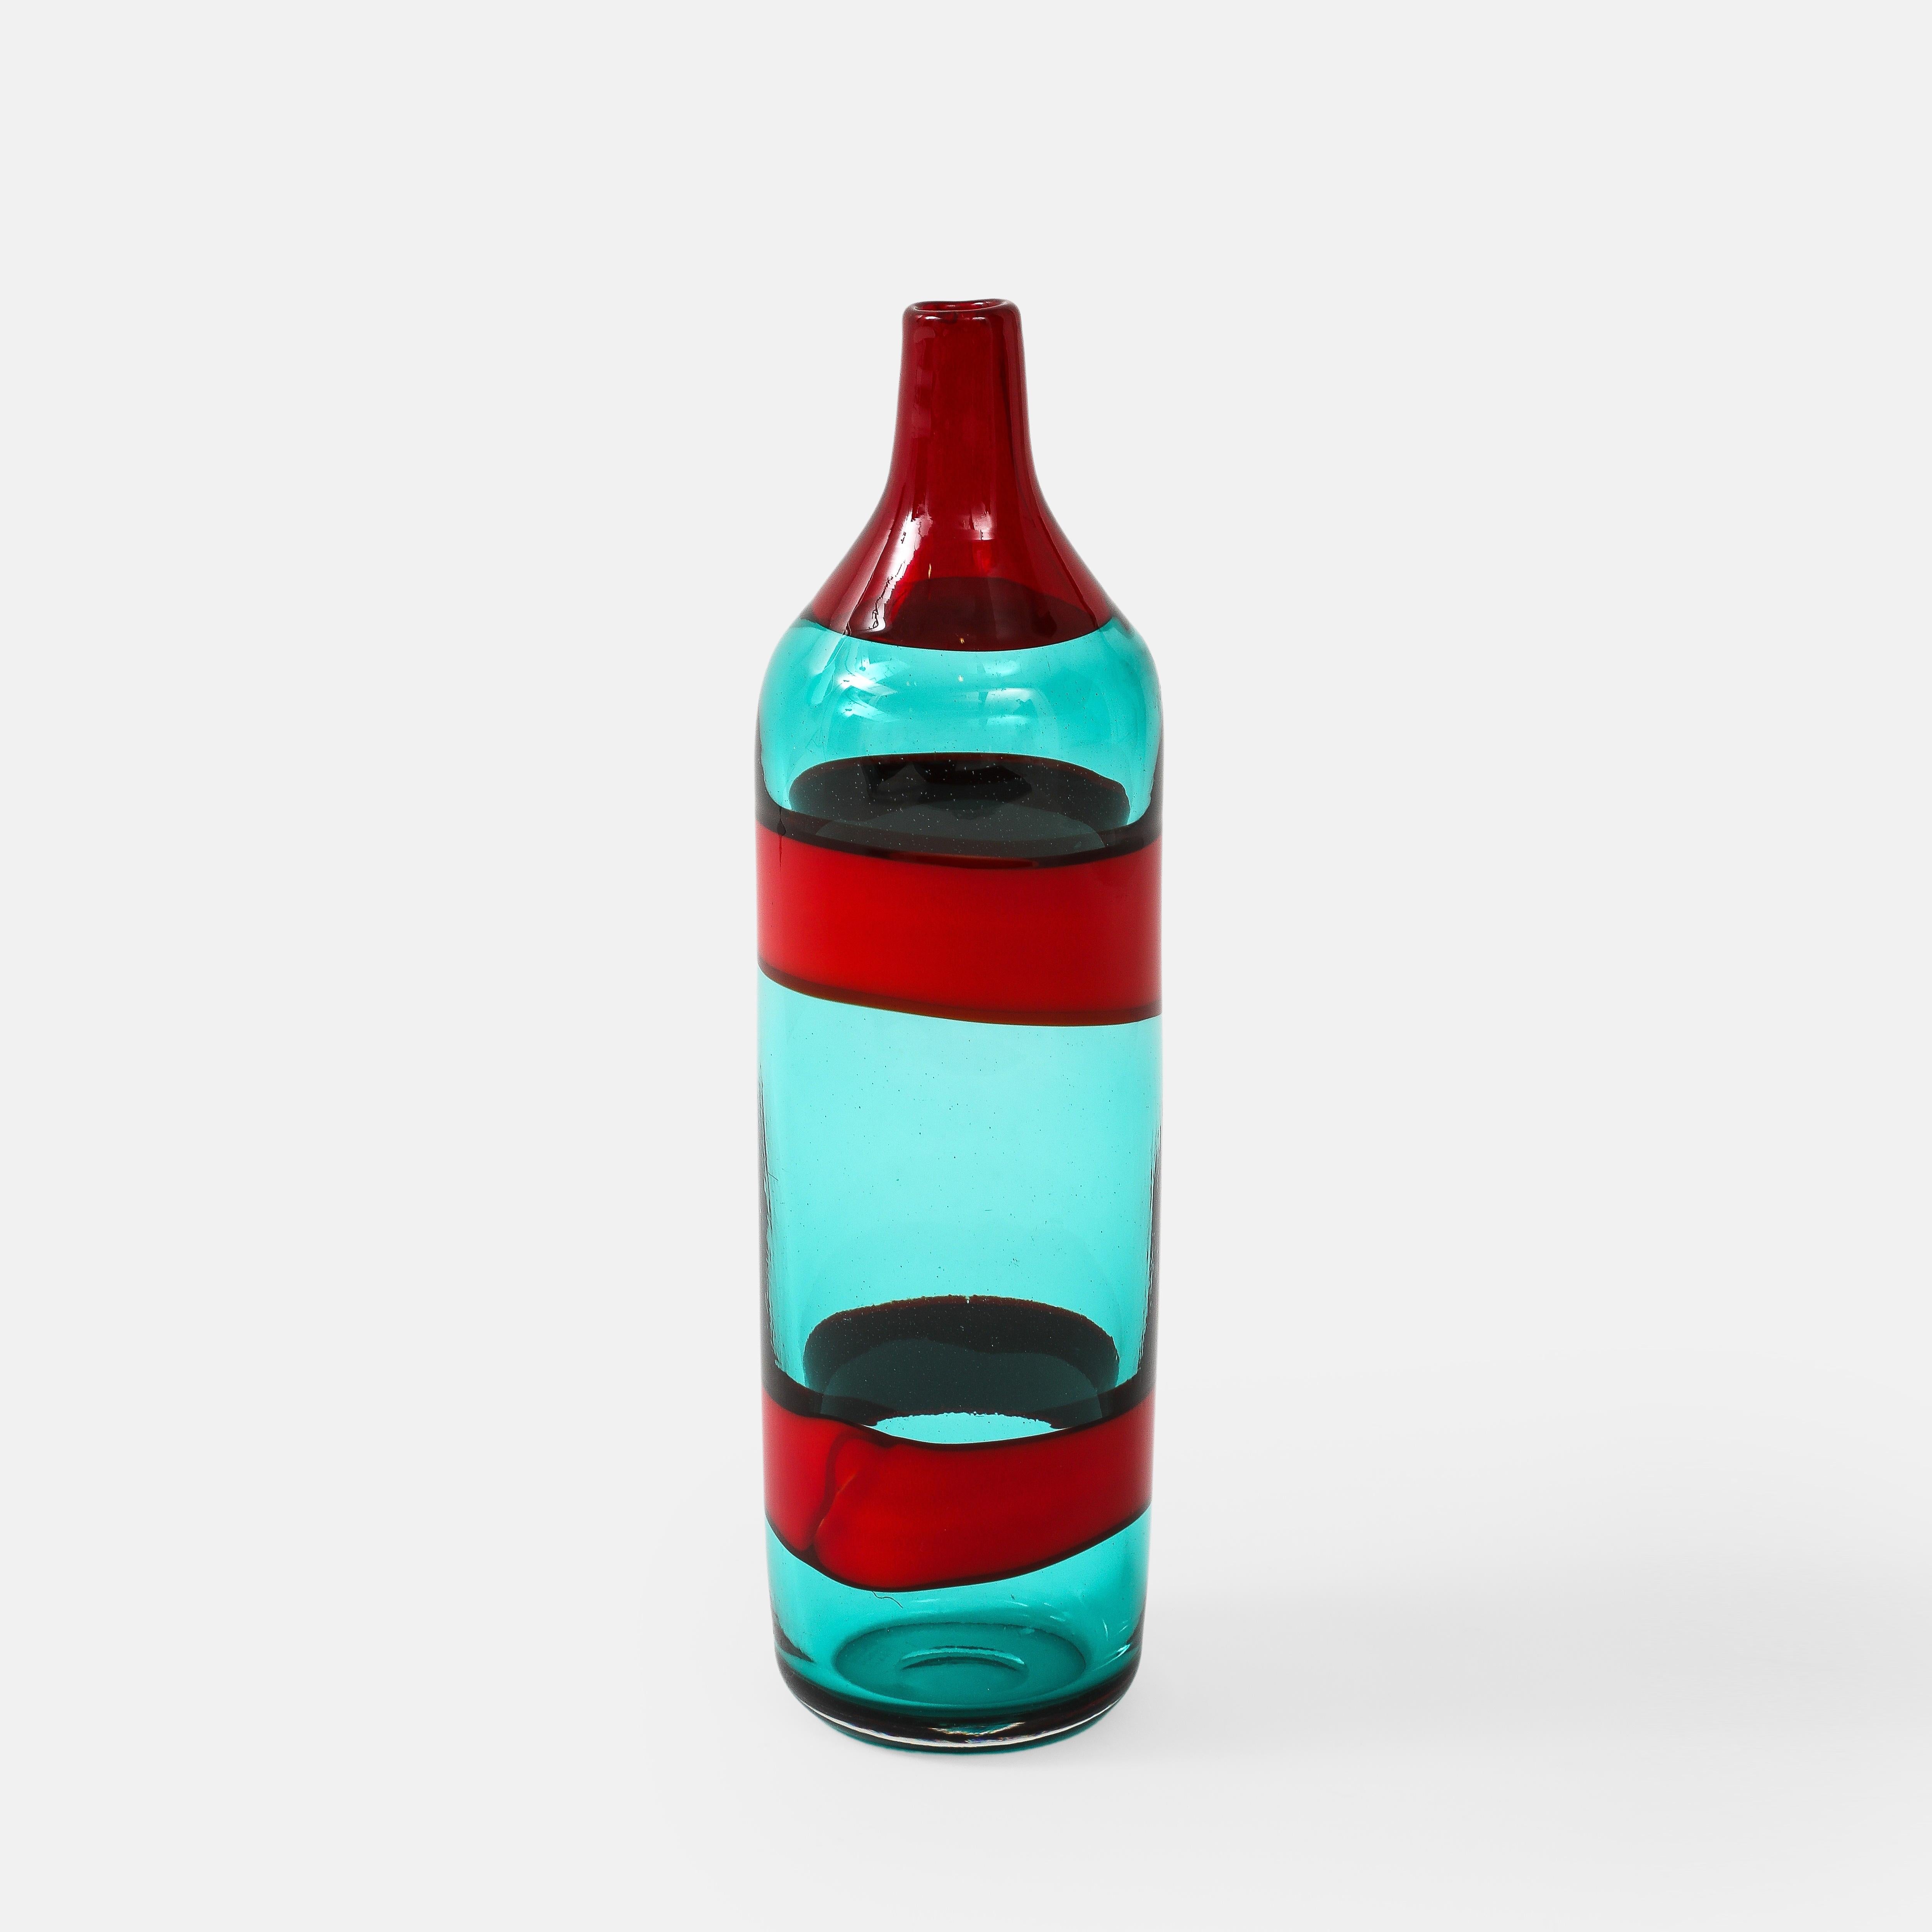 Fulvio Bianconi für Venini Fasce Orizzontali, große Flasche Modell 4315 aus transparentem blaugrünem Glas, verziert mit zwei horizontalen Bändern in opakem Rot auf dem Korpus und einem einzelnen transparenten roten Band auf dem Hals, Italien, um